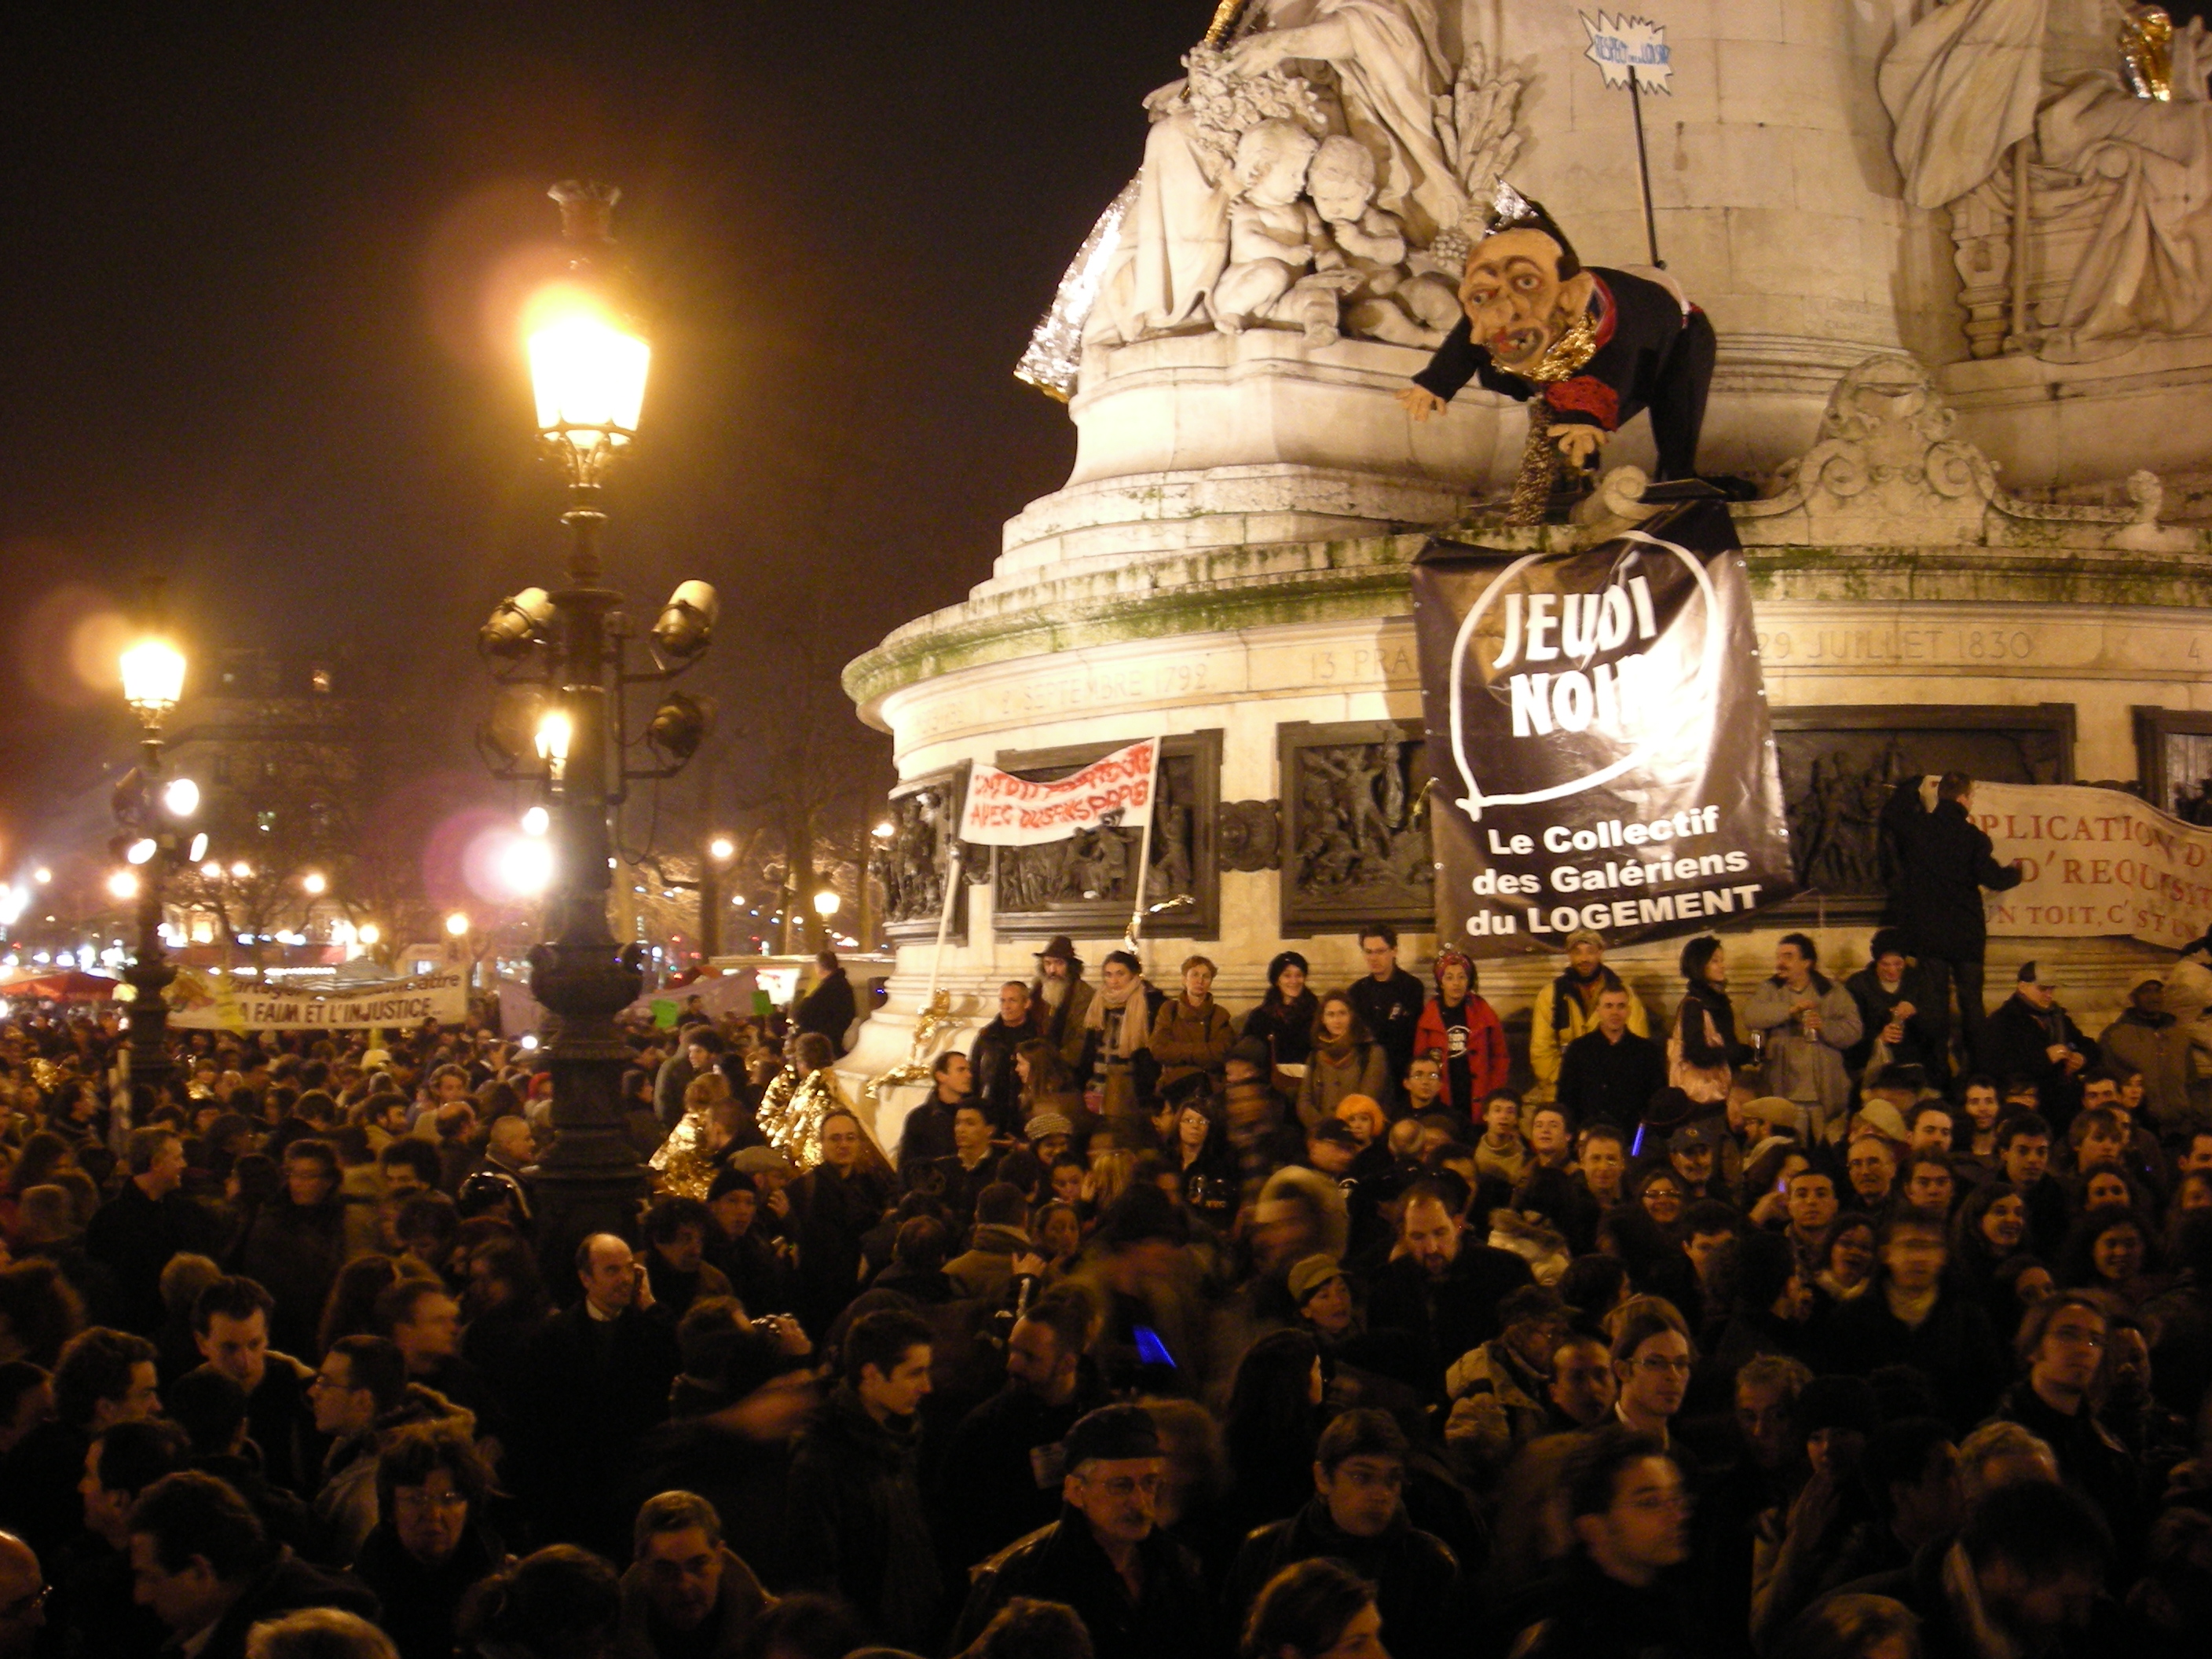 Rassemblement populaire en faveur des sans abris et des mal logés le 21 février 2008 sur la place de la République à Paris.